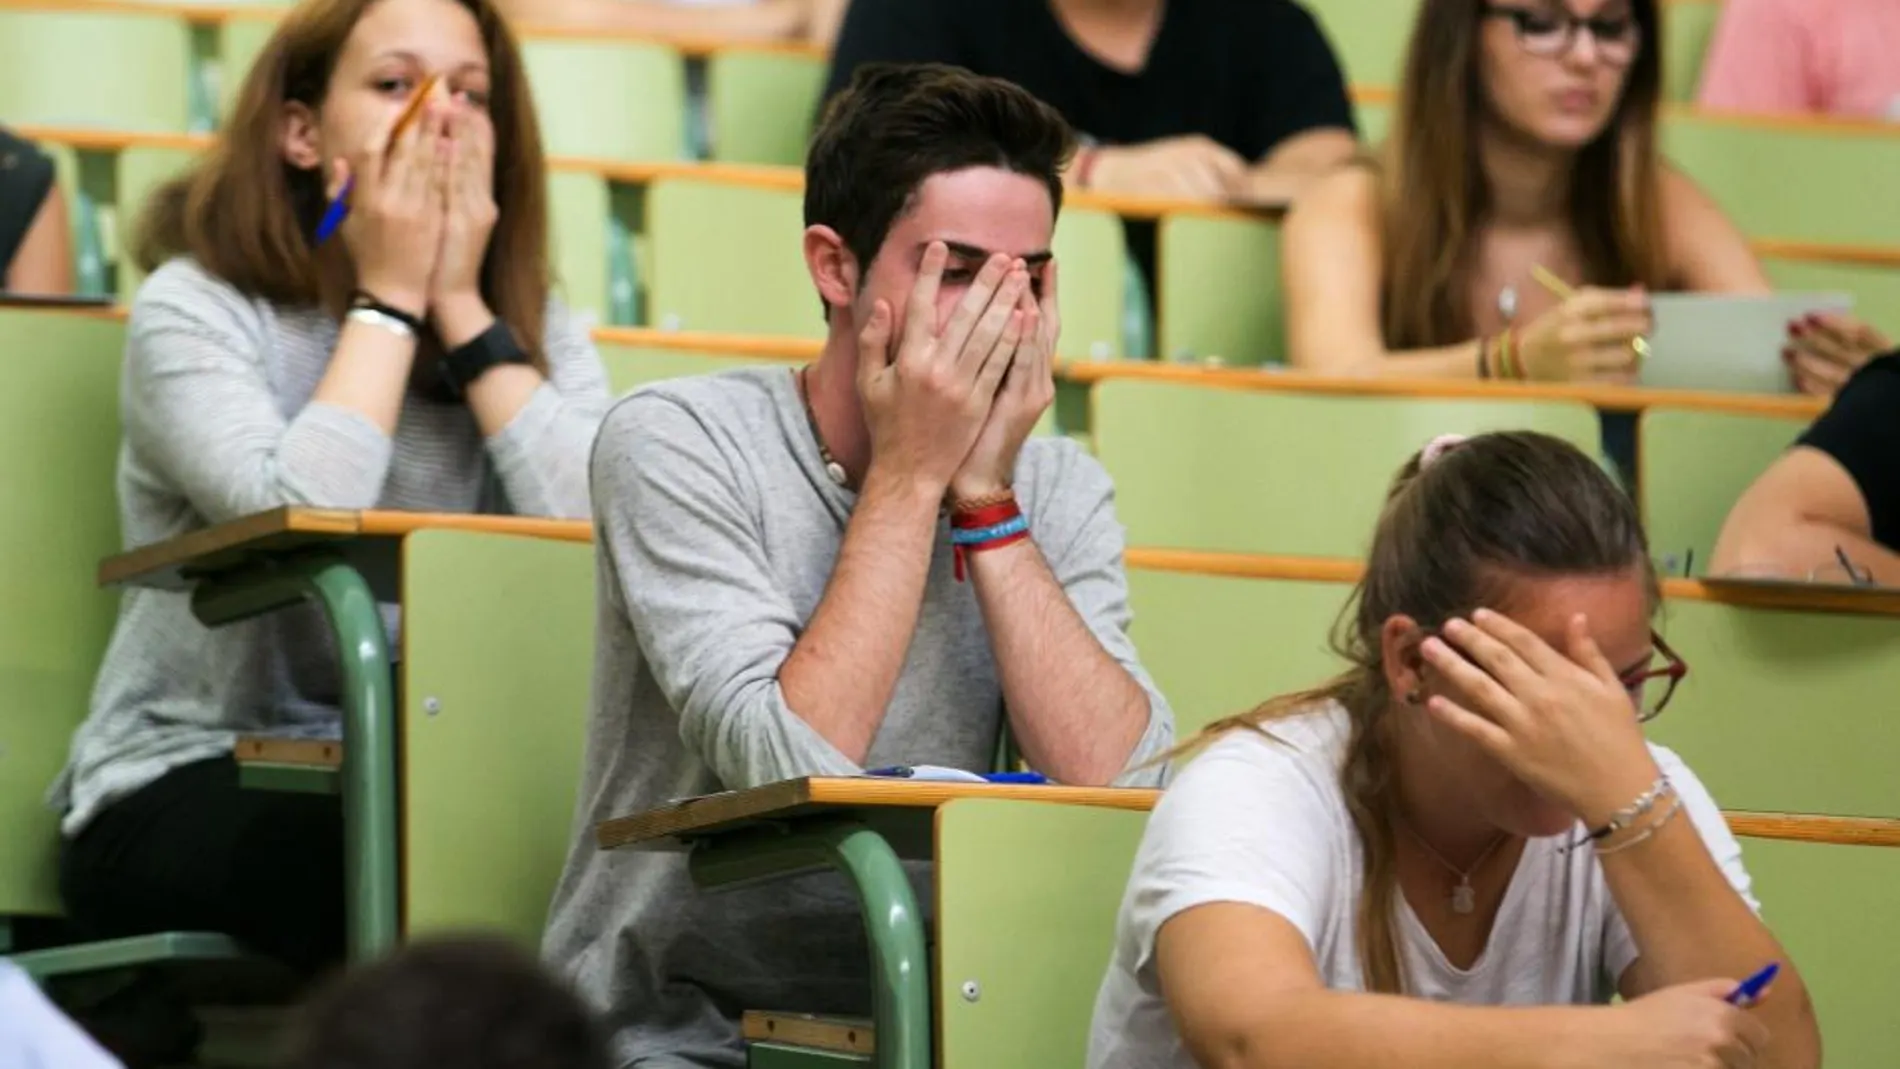 Los exámenes suelen generar estrés y ansiedad en los alumnos.. y eso no significa que padezcan ningún trastorno mental